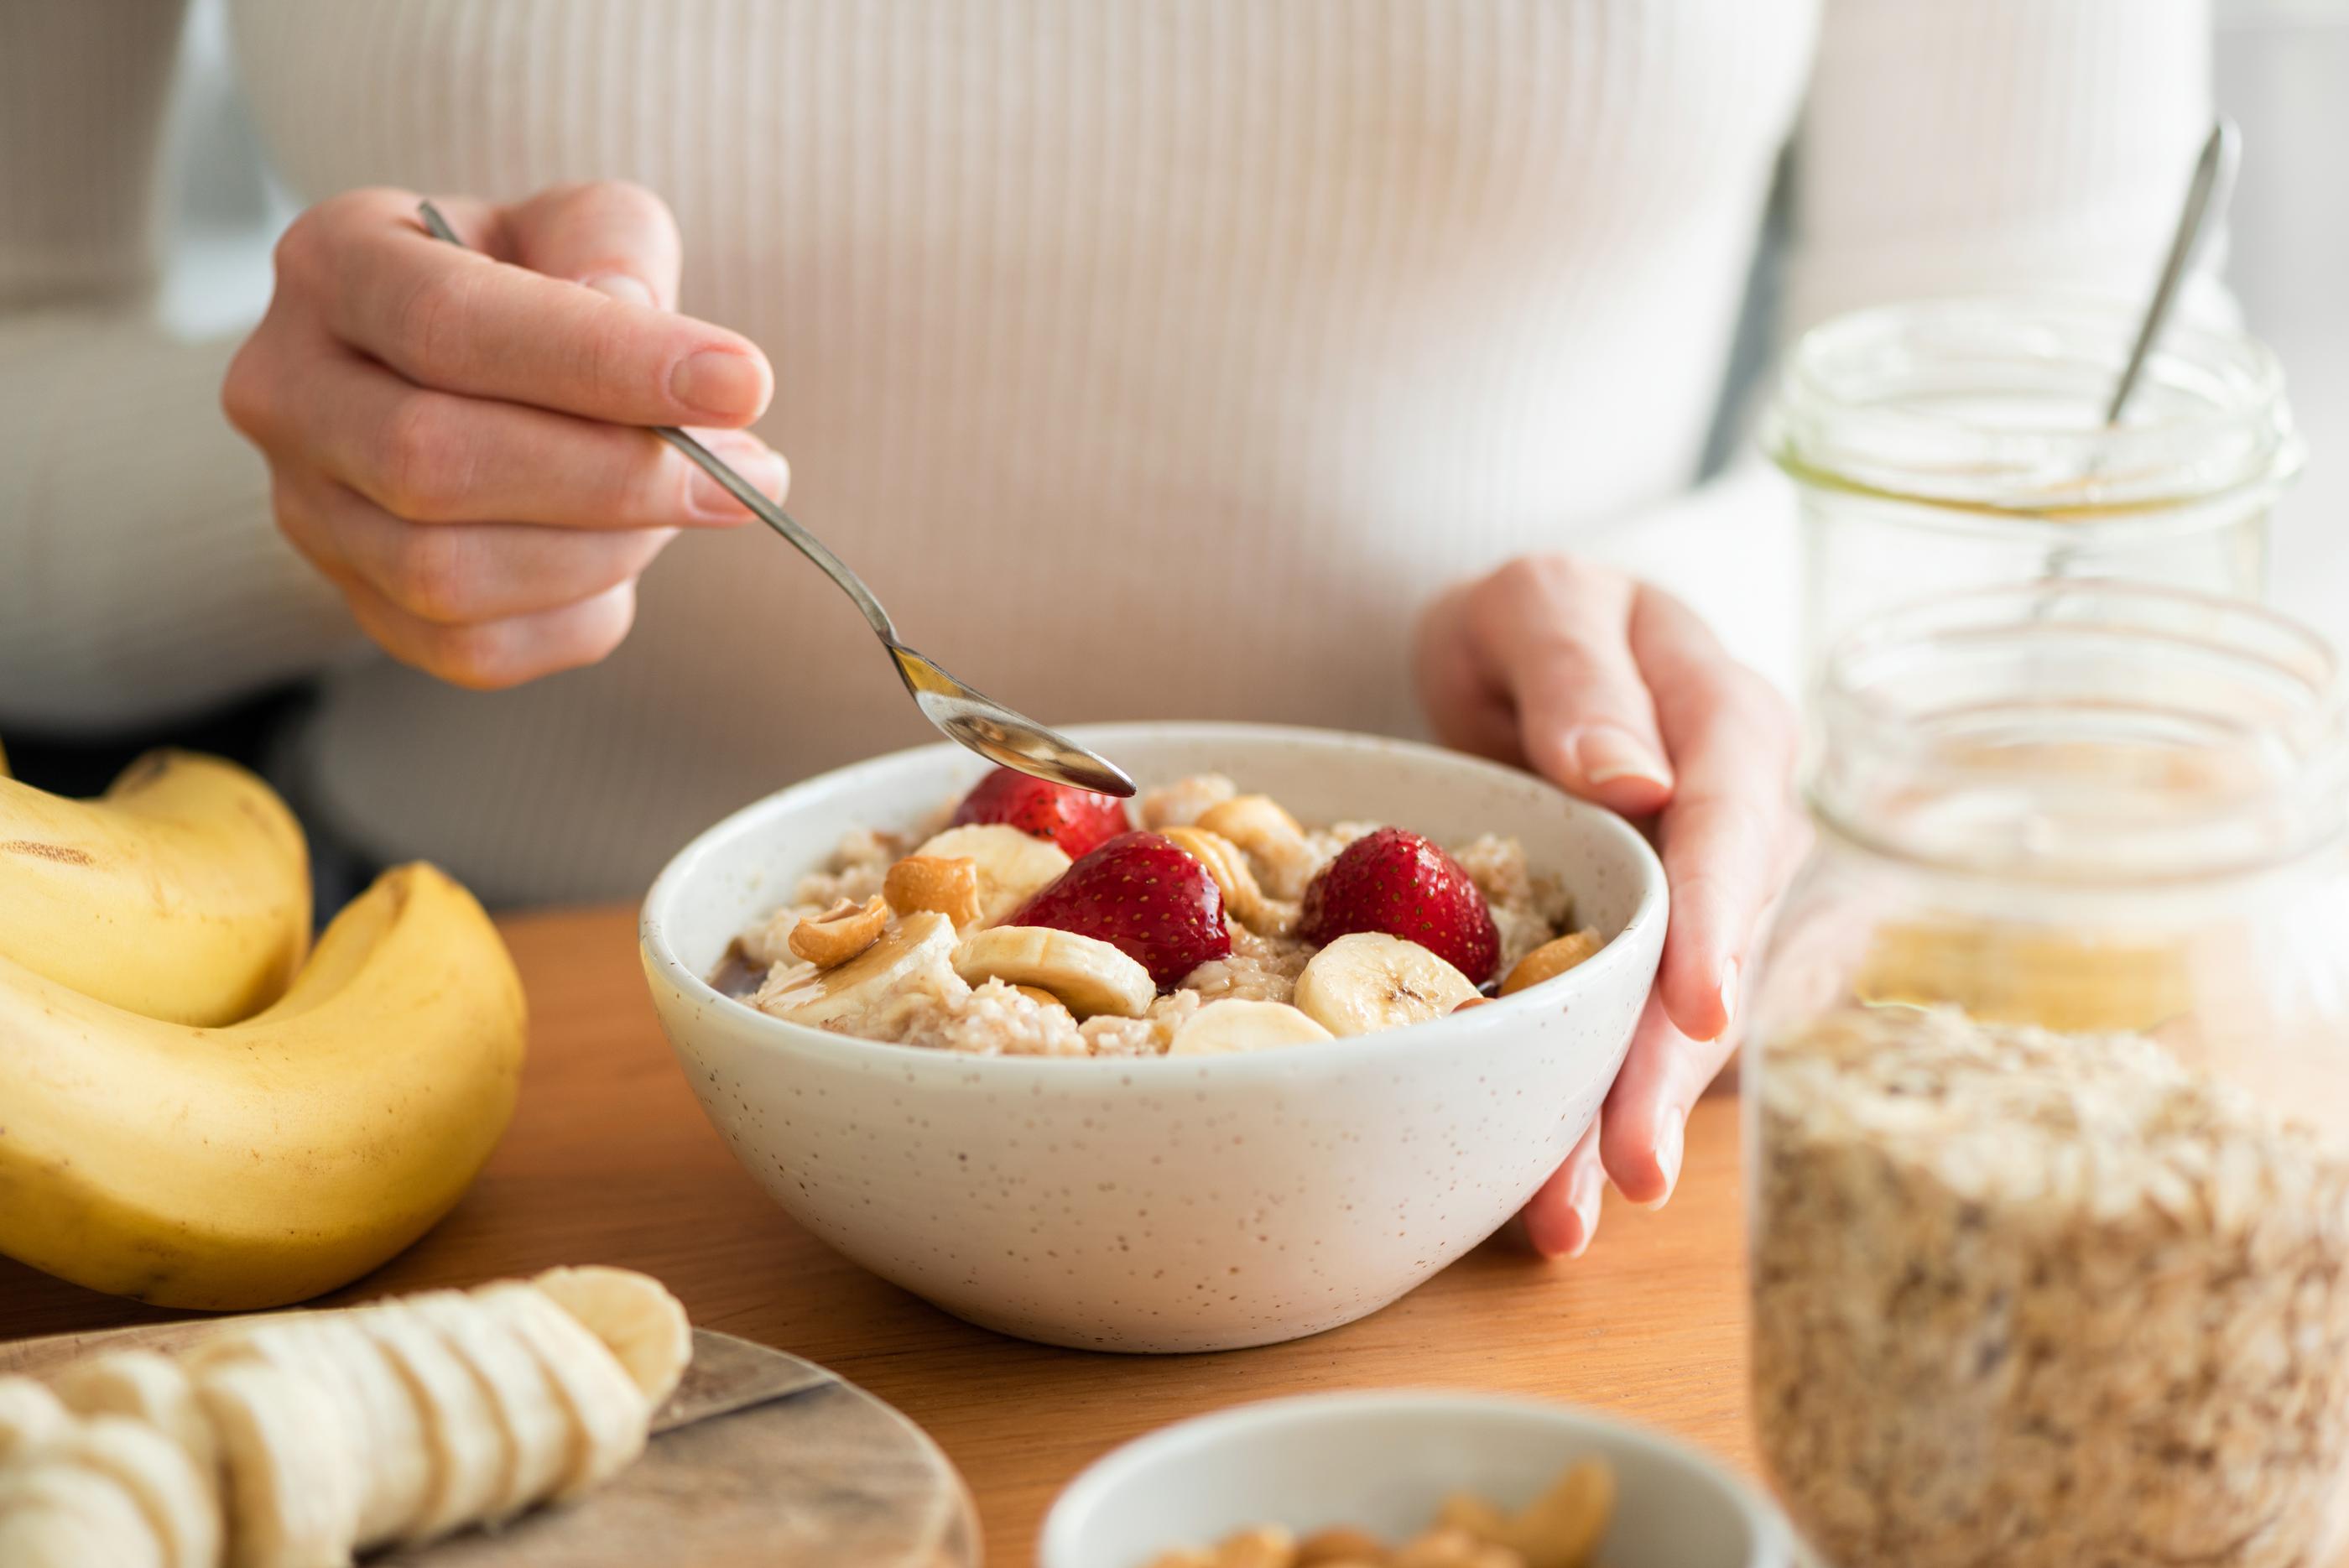 Les céréales idéales du petit-déjeuner sont complètes et sans sucre ajouté  - Le Soir